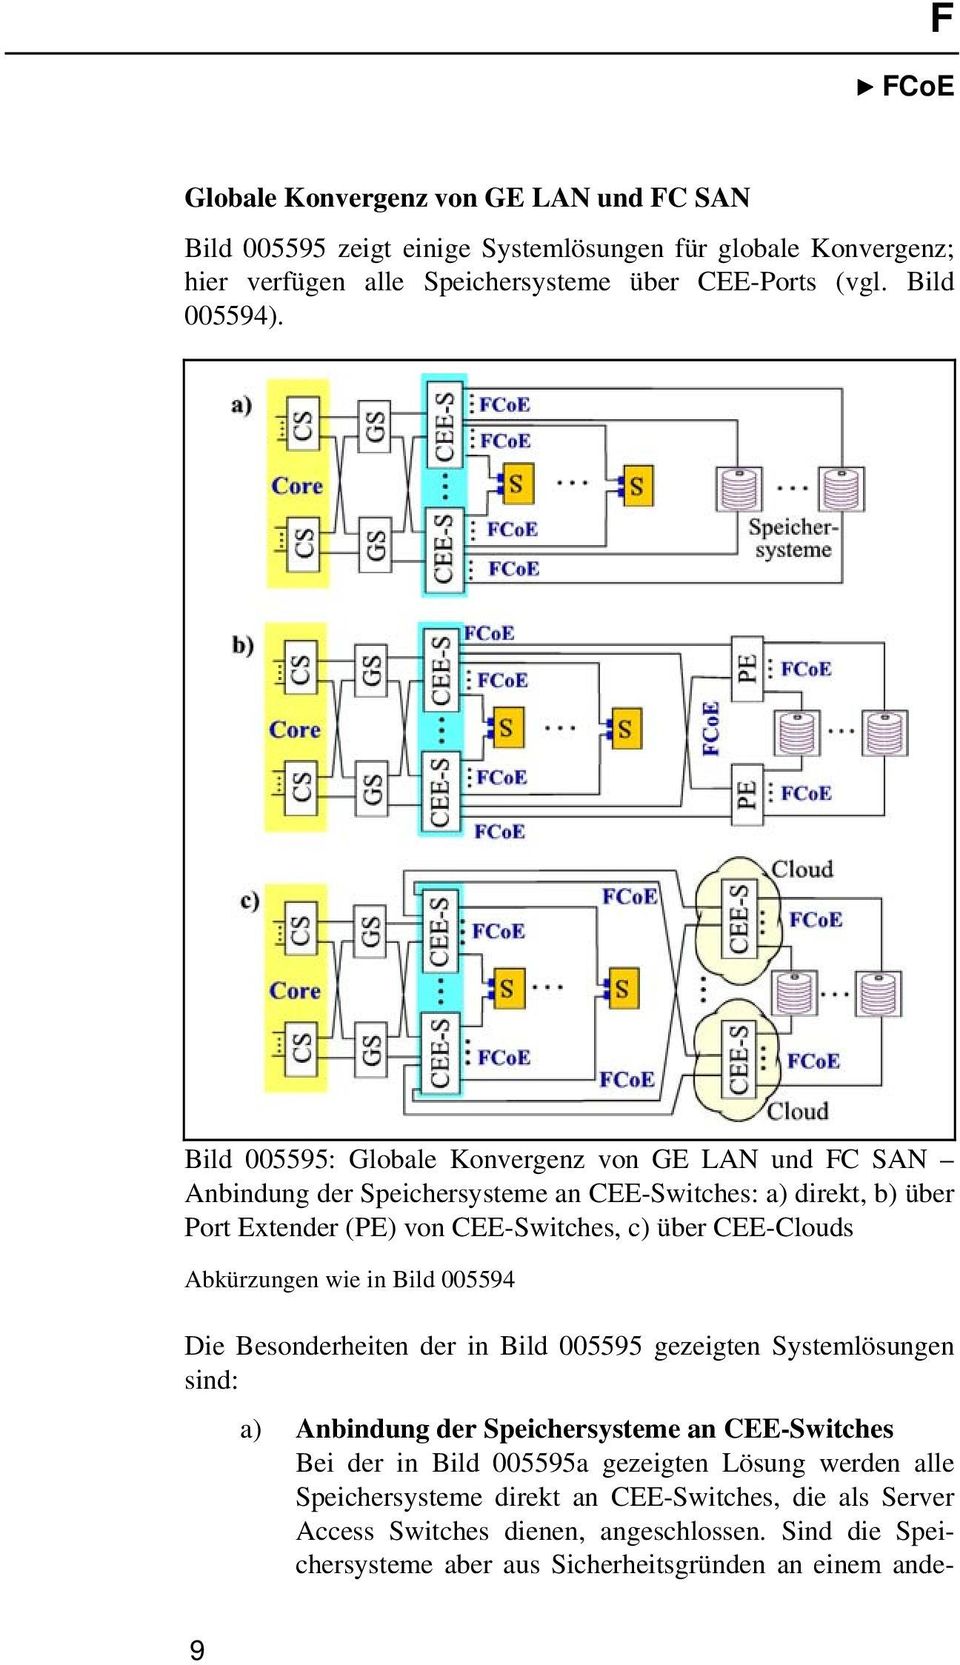 Abkürzungen wie in Bild 005594 Die Besonderheiten der in Bild 005595 gezeigten Systemlösungen sind: a) Anbindung der Speichersysteme an CEE-Switches Bei der in Bild 005595a